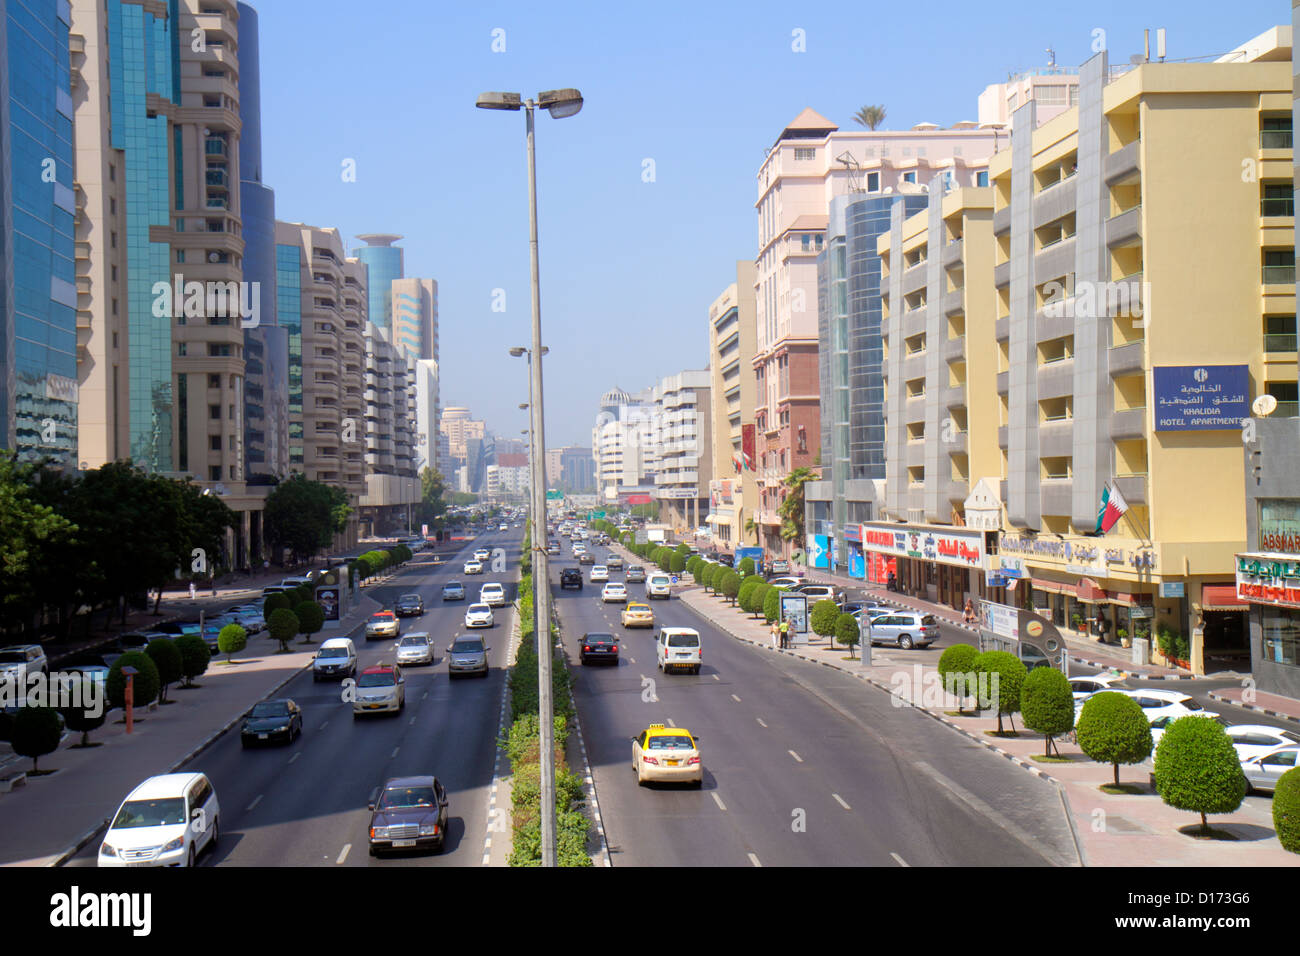 Dubai UAE,Emirati Arabi Uniti,Deira,al Rigga,al Maktoum Road,Street scene,business,distretto,traffico,edifici,skyline della città,inglese,arabo,lingua, Foto Stock